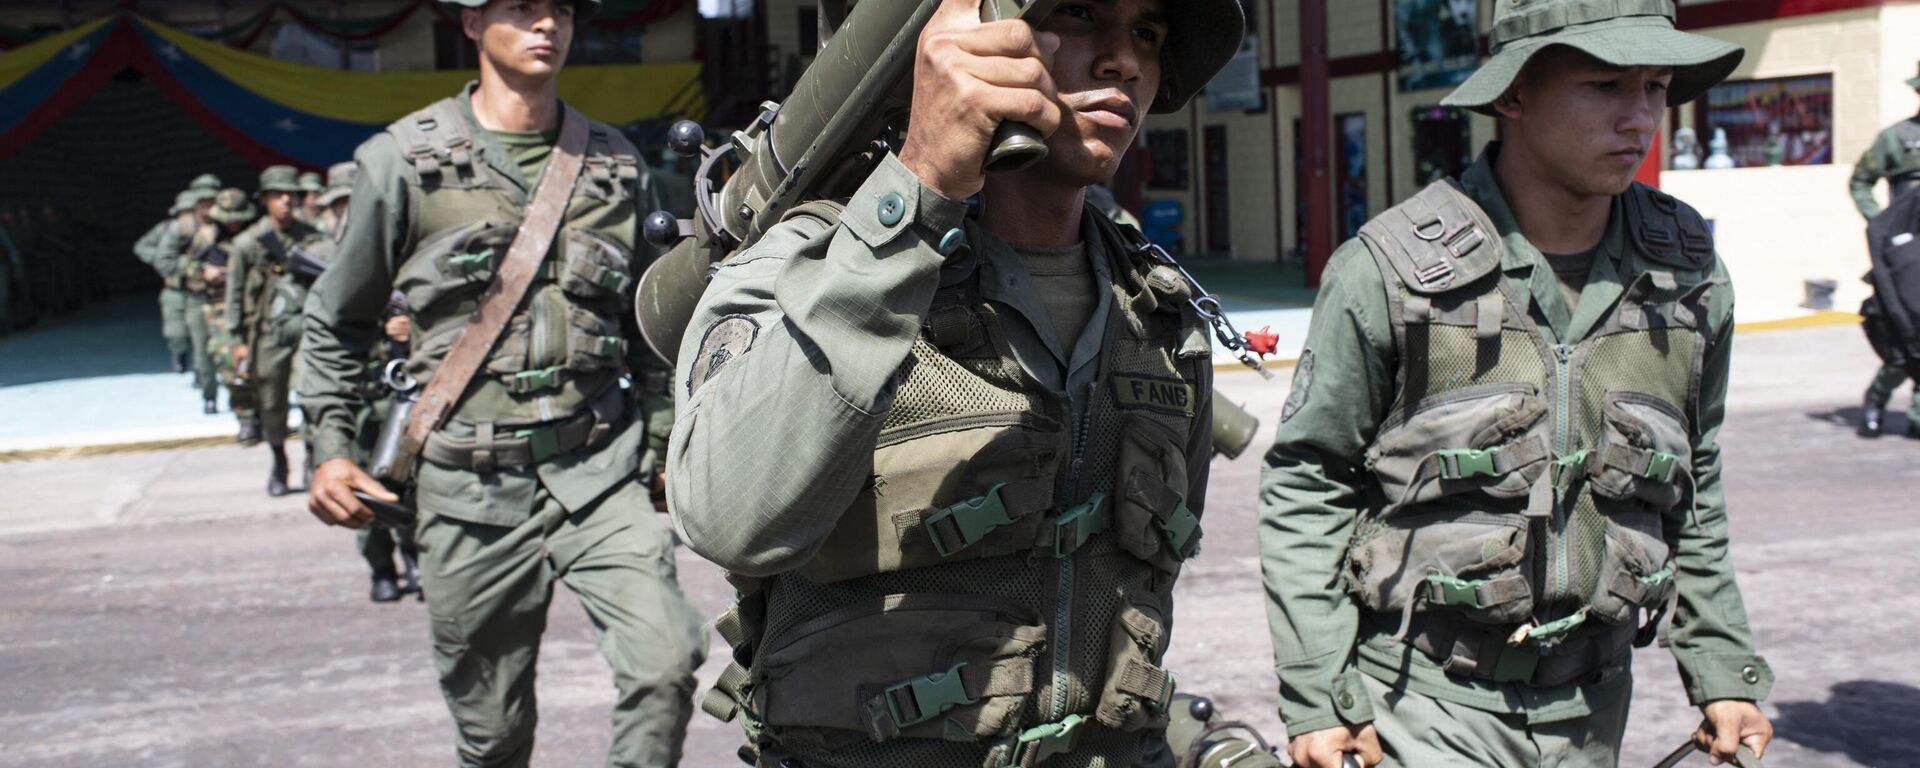 Un grupo de soldados de operaciones especiales de la Fuerza Armada Nacional Bolivariana (FANB) que participan en la operación militar Autana, el 21 de diciembre de 2022.   - Sputnik Mundo, 1920, 18.04.2023